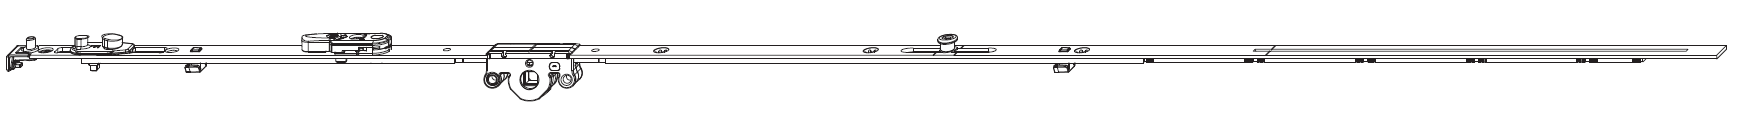 MAICO -  Cremonese MULTI-MATIC anta ribalta antieffrazione altezza maniglia fissa con piedino e dss per ribalta e bilanciere - gr / dim. 1590 - entrata 15 - alt. man. 500 - lbb/hbb 1341 - 1590